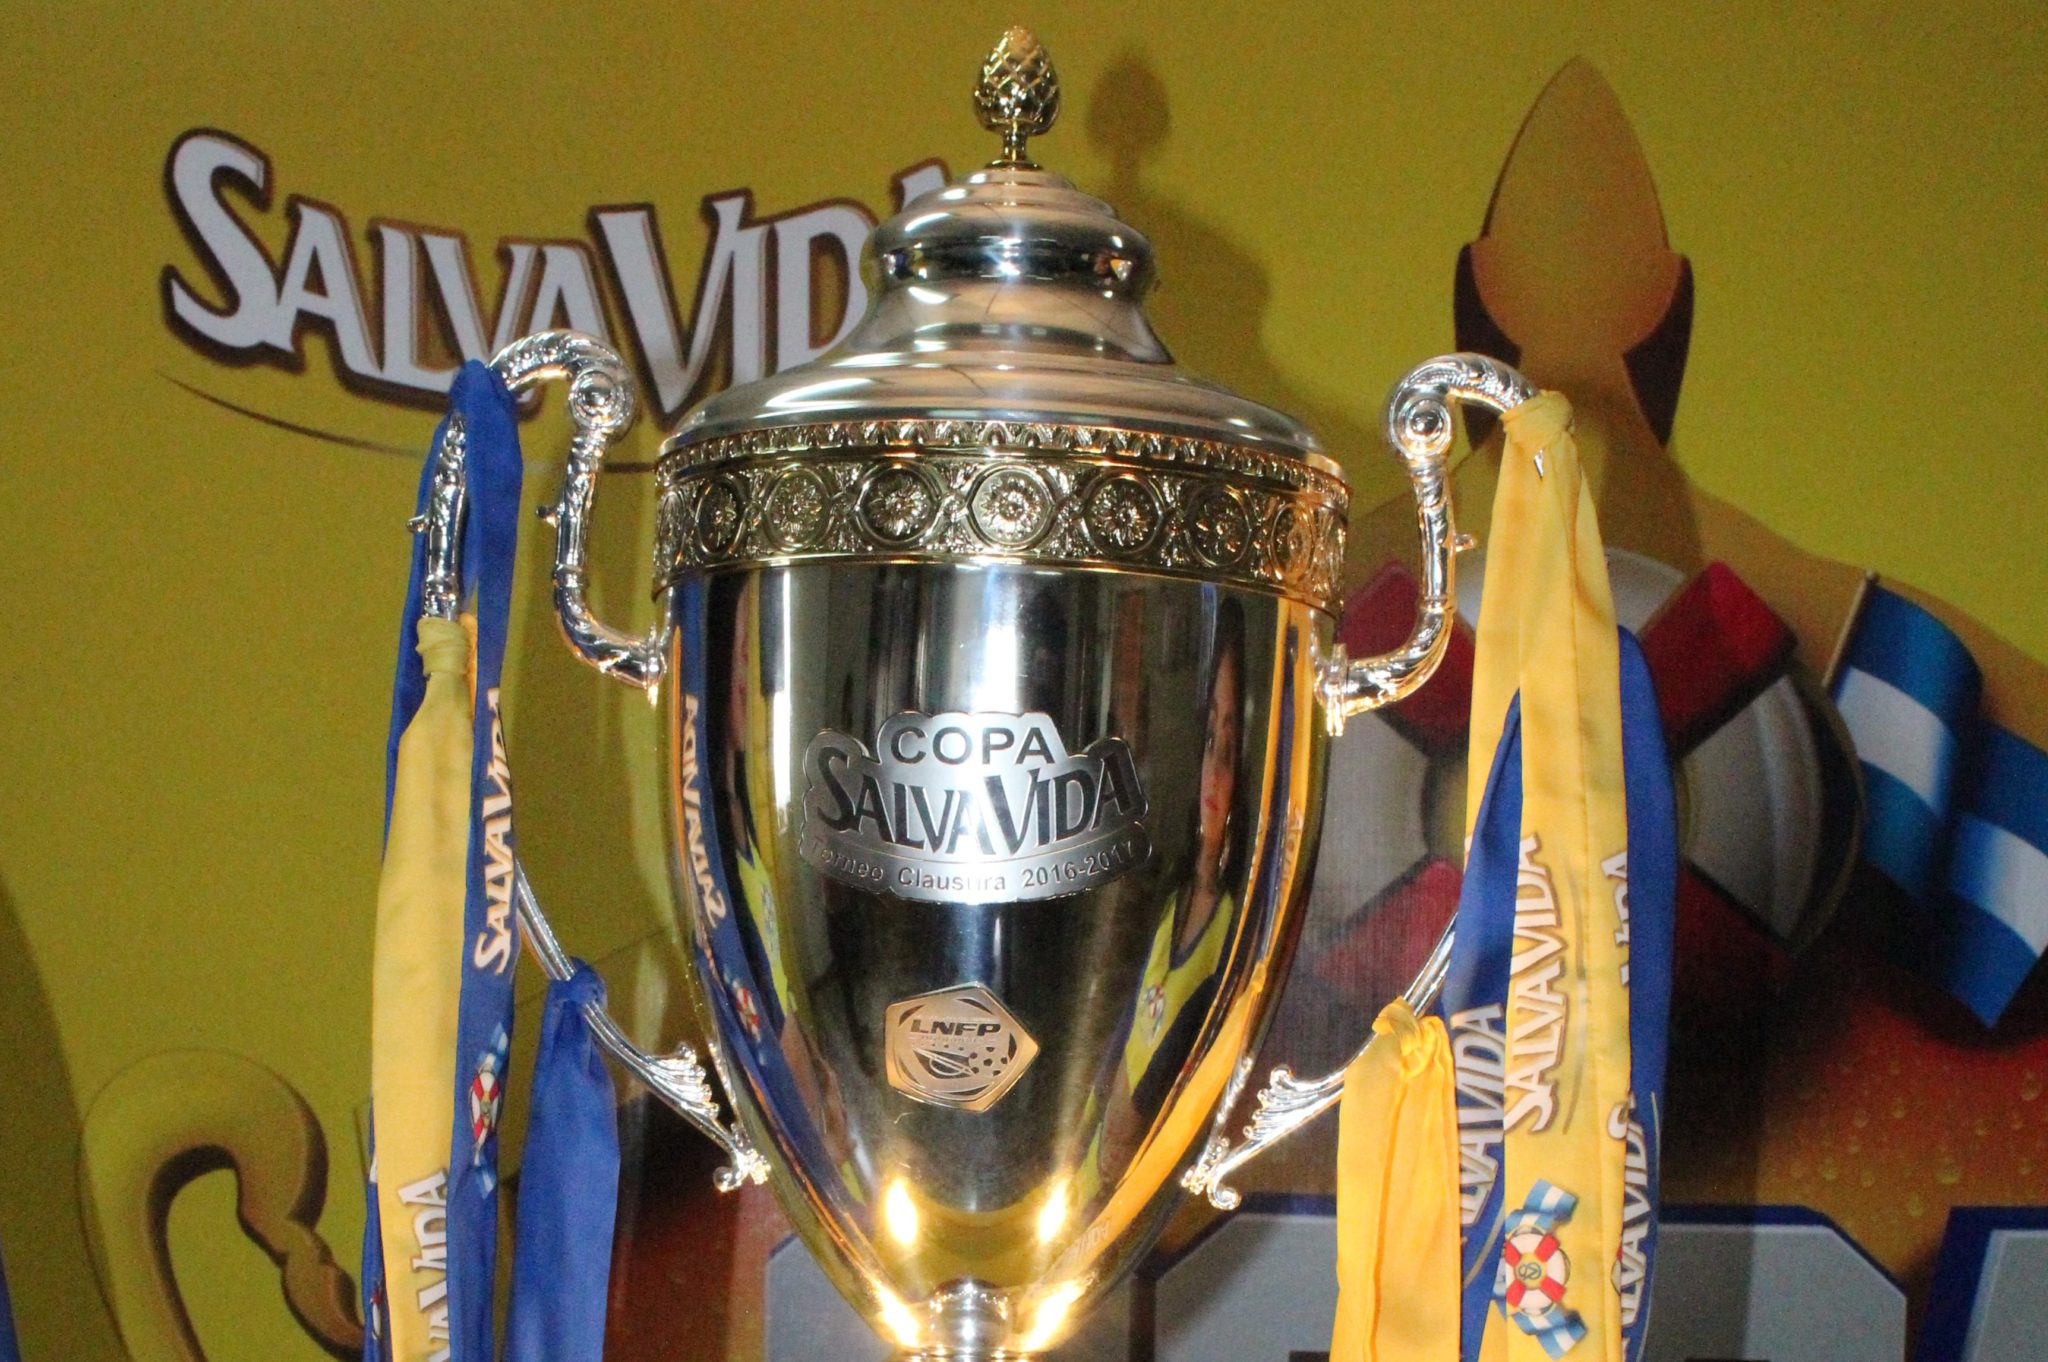 El próximo campeón ya tiene su copa. Salvavida presentó el trofeo del monarca del clausura 2016-2017